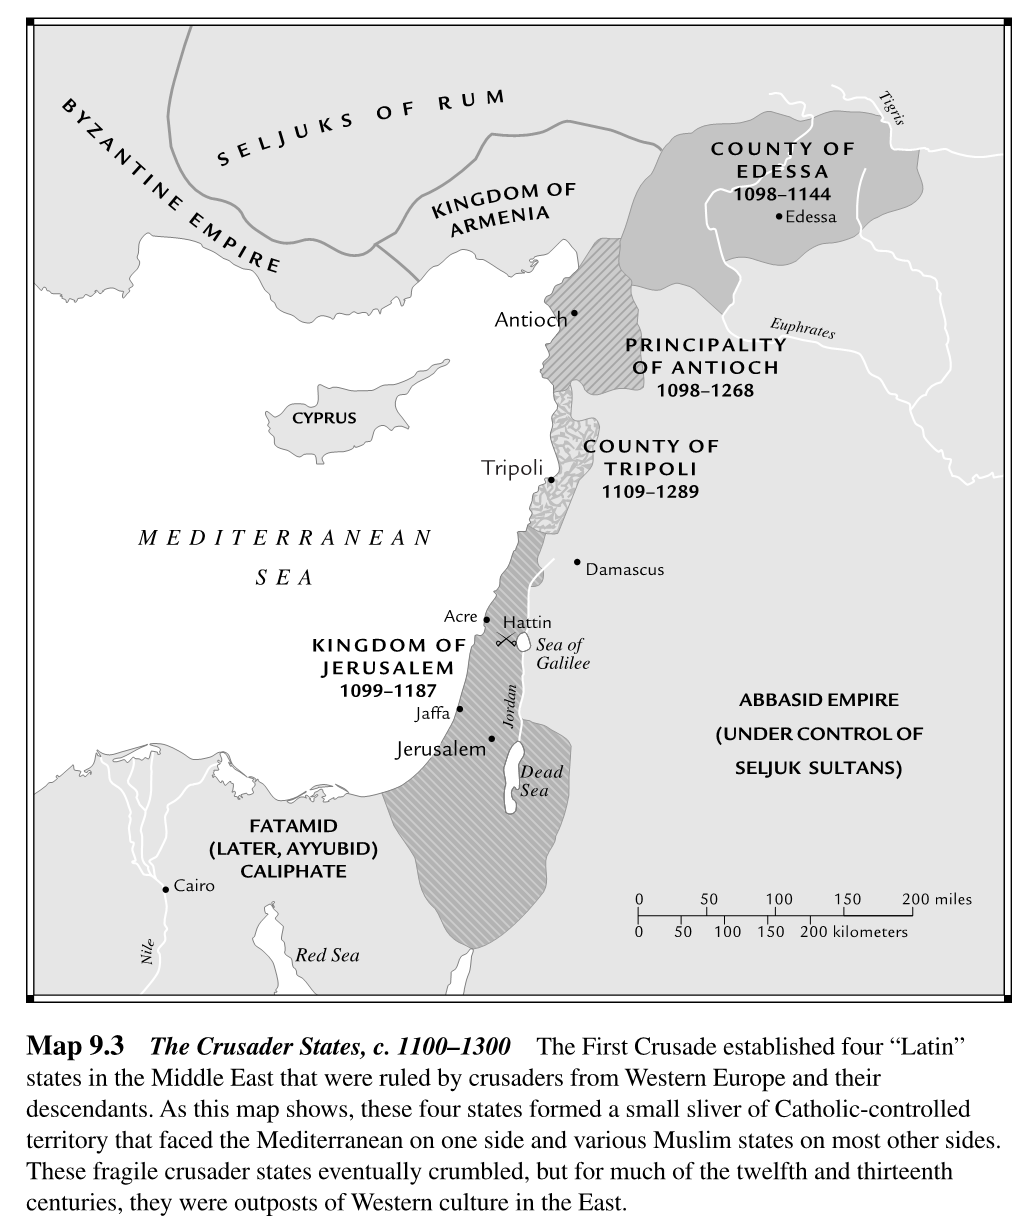 9.3 the Crusader States, C. 1100-1300